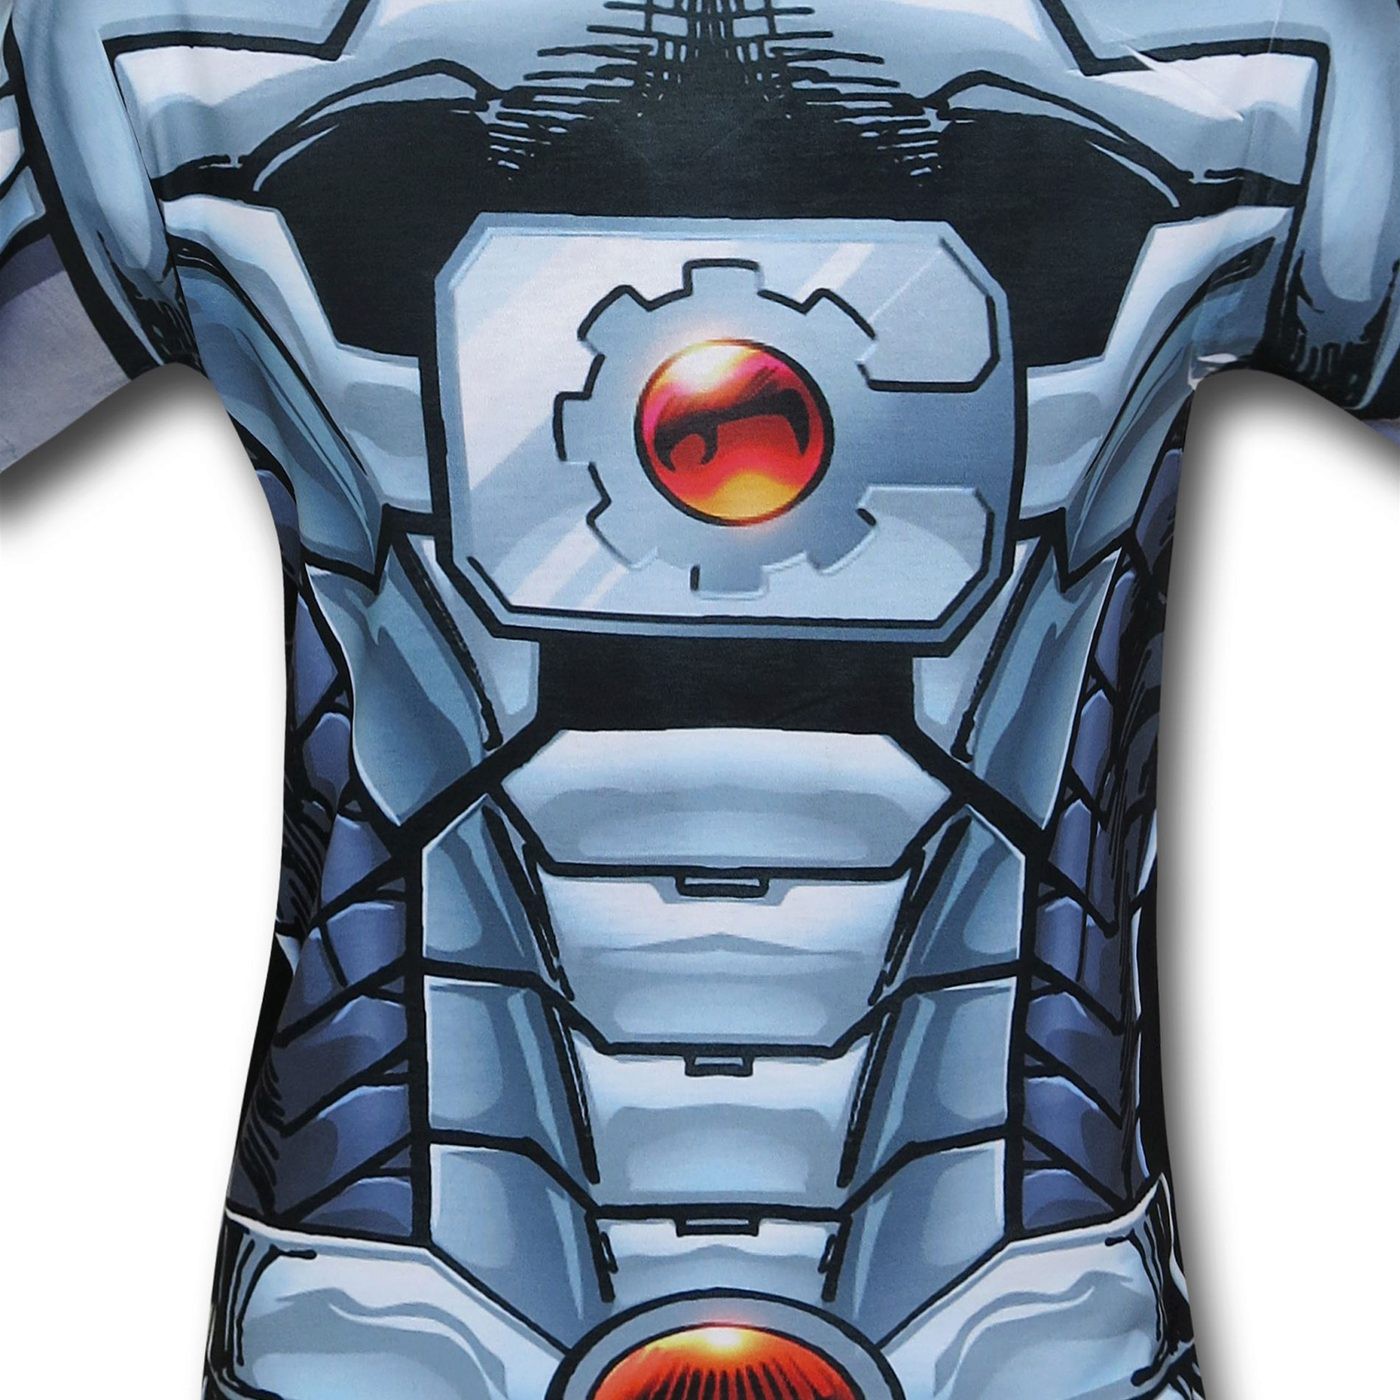 Cyborg Sublimated Costume T-Shirt